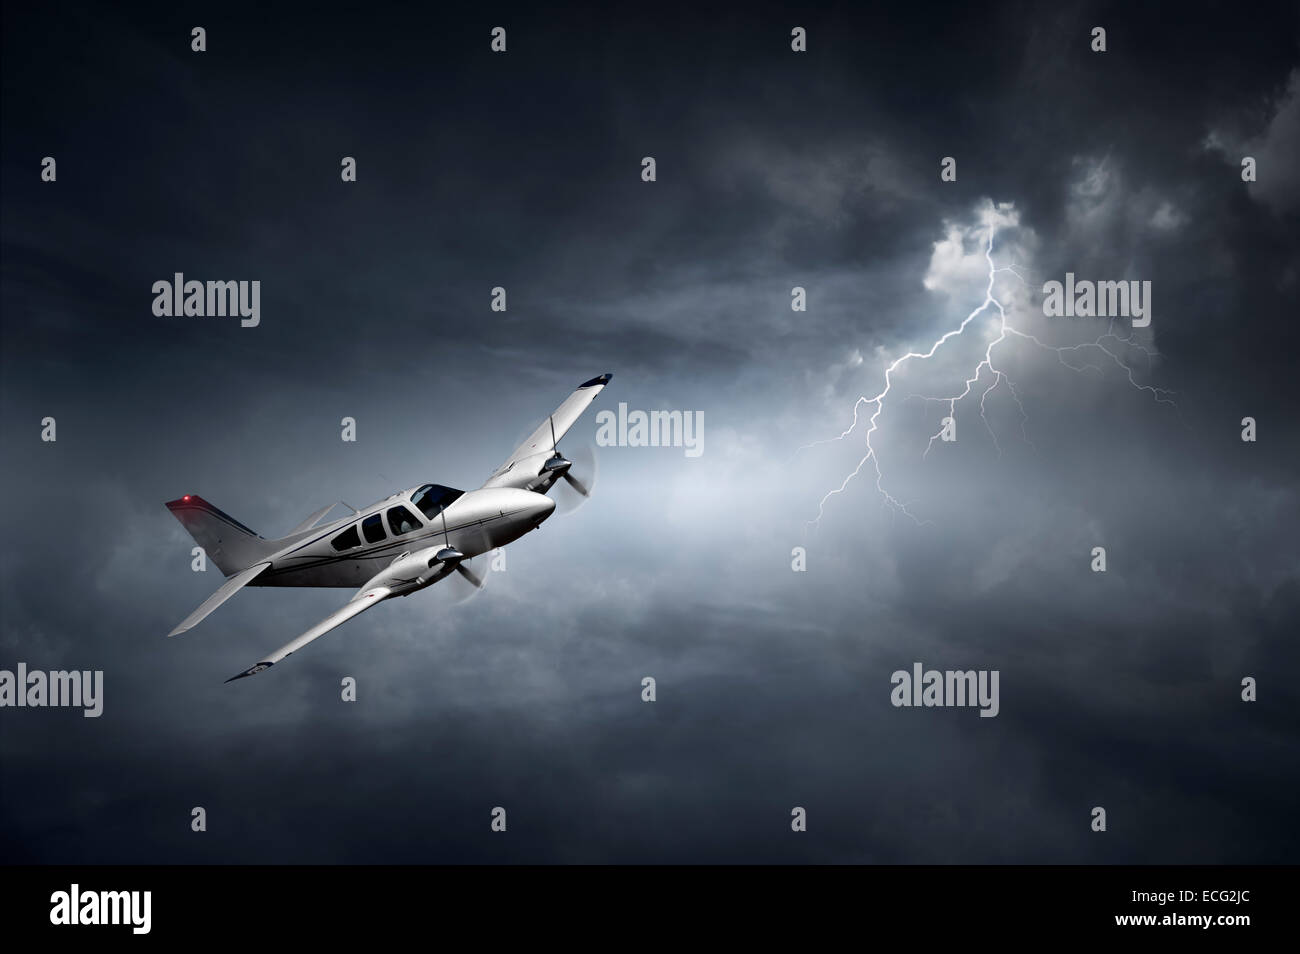 Vol d'un avion dans un orage avec des éclairs (notion de risque - art numérique) Banque D'Images